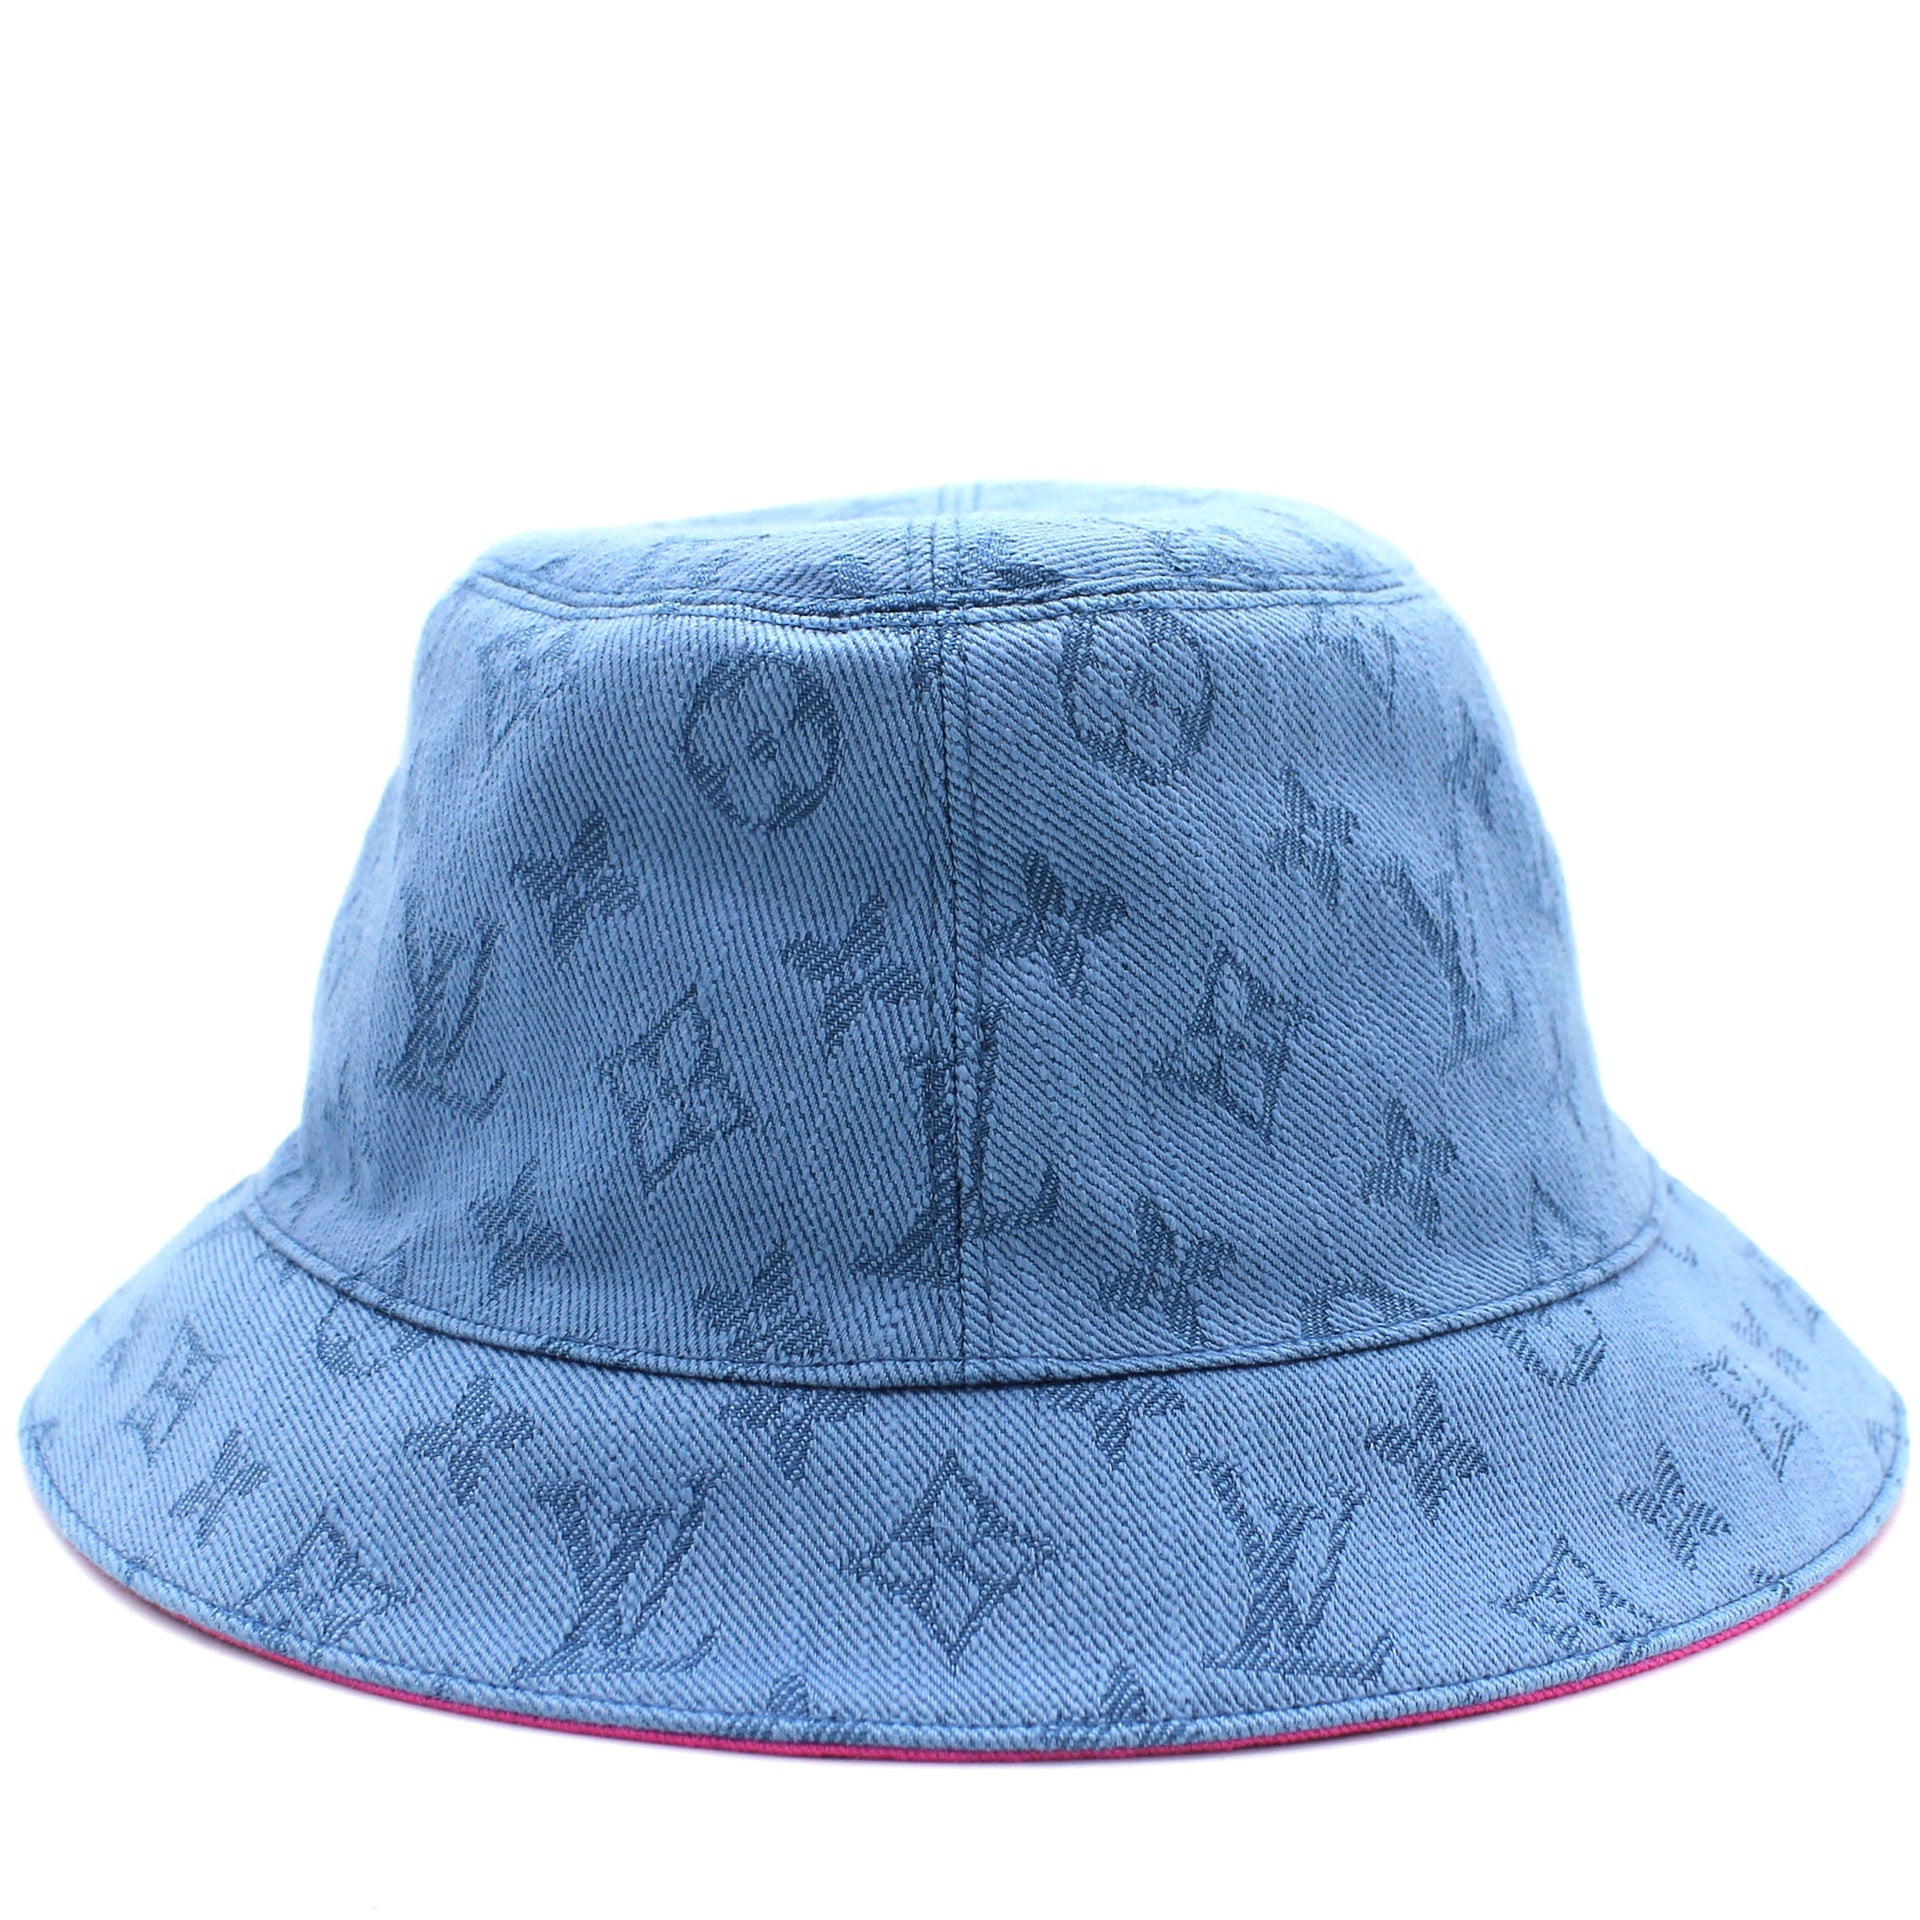 Louis Vuitton - Monogram Essential Bucket Hat - Cotton - Blue - Size: 58 - Luxury